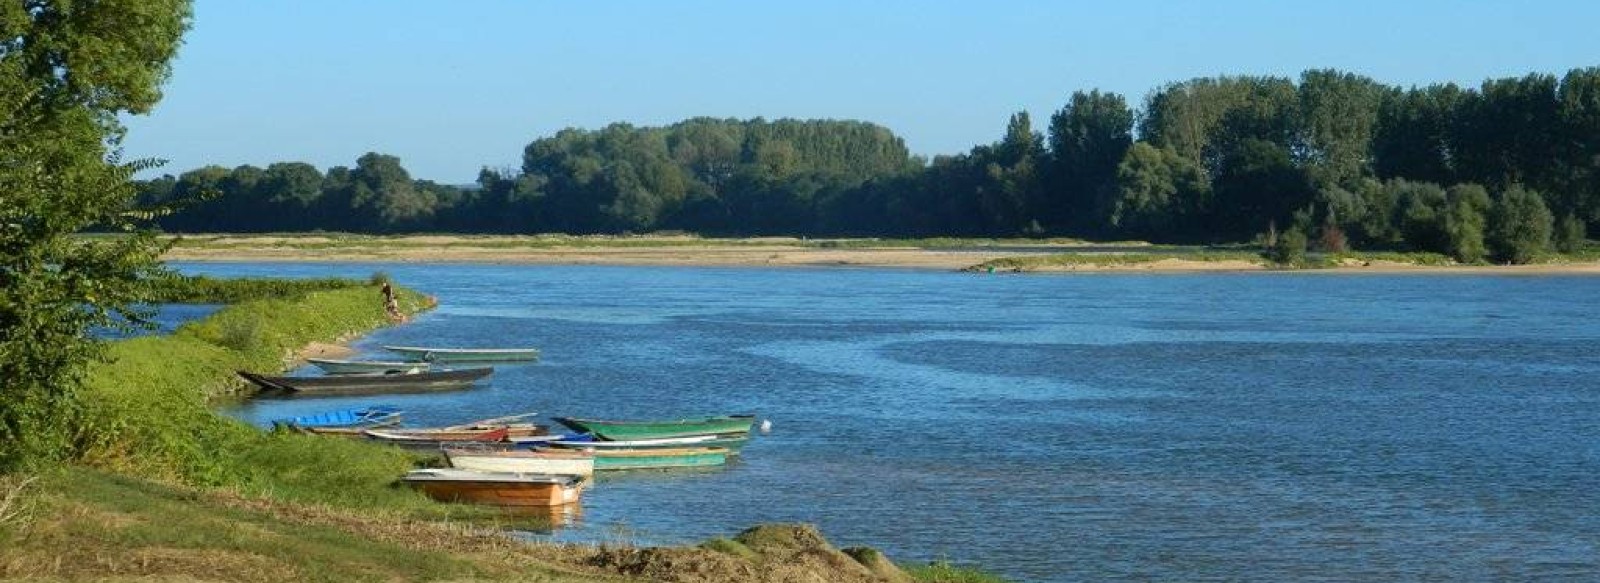 La Boire Torse - Vair-sur-Loire > Ingrandes-Le Fresne sur Loire